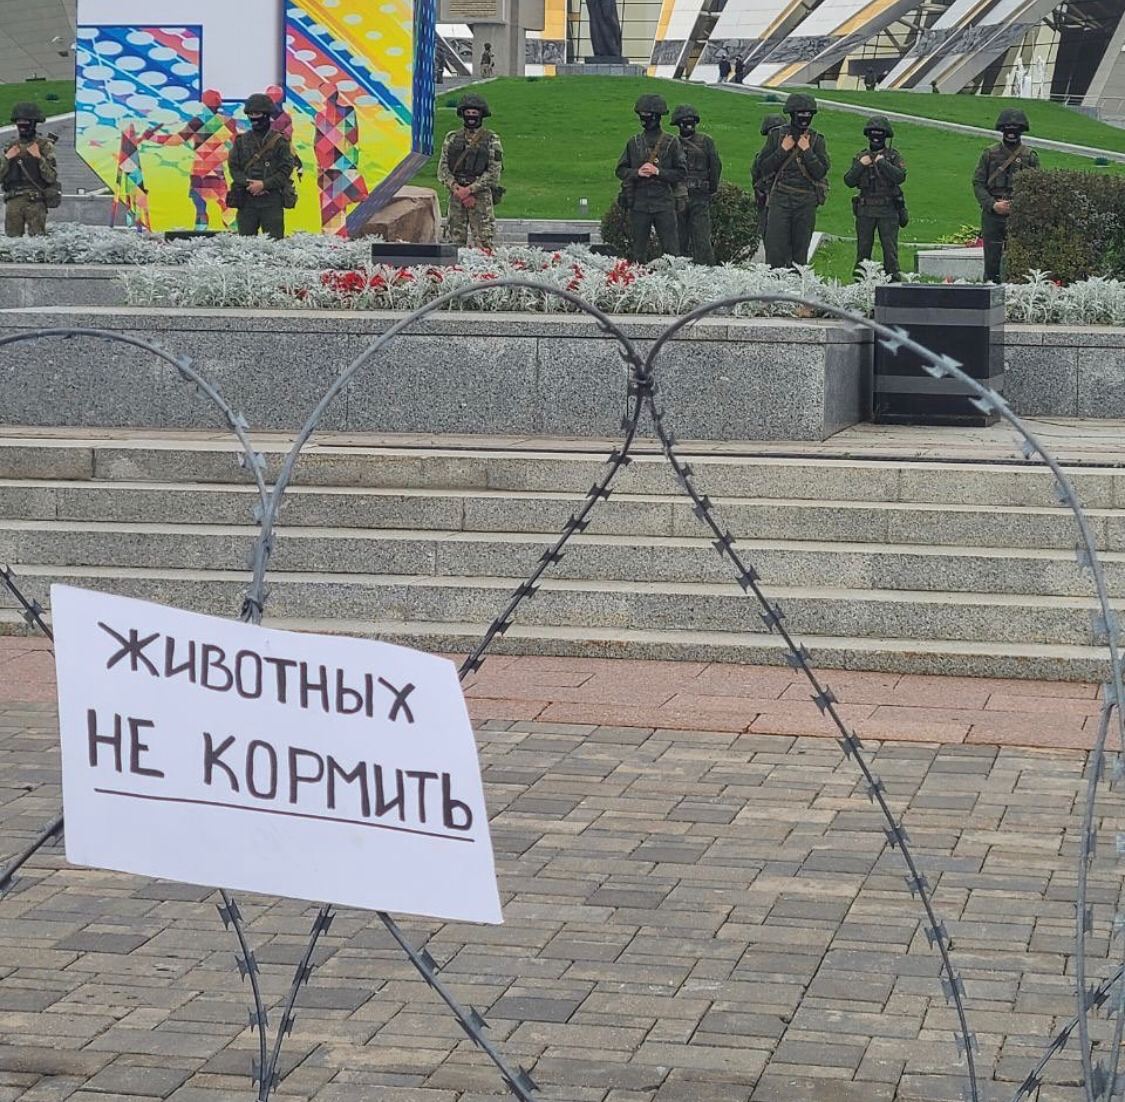 1125x1102, 279 Kb / Животные, колючка, Стелла, не кормить, войска, протест, Минск